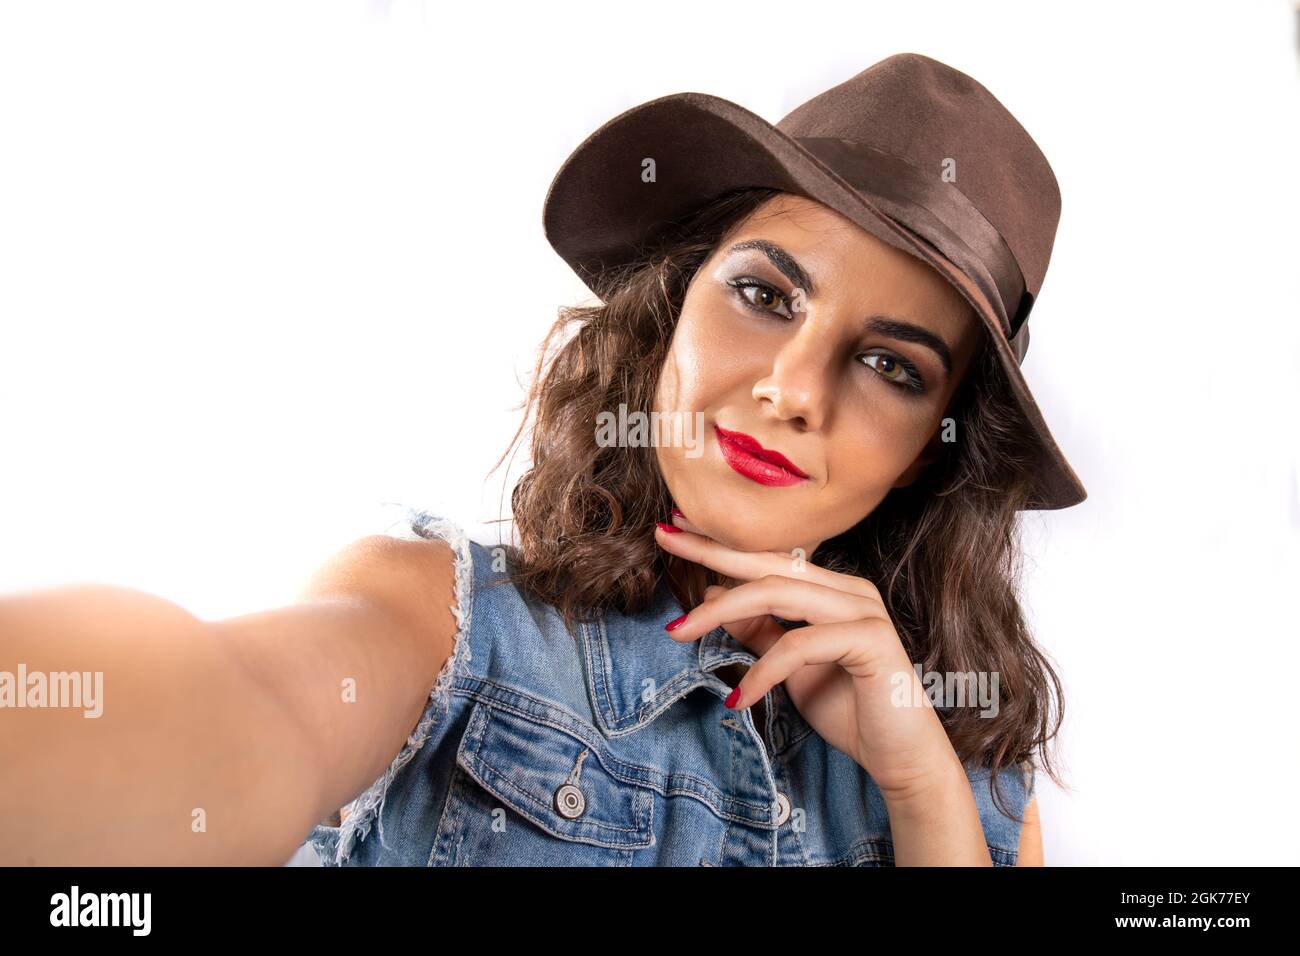 Manía selfie! Mujer joven atractiva con un sombrero marrón y un conjunto de  jeans tomando una selfie. Mirada intensa y soñadora subrayada por el  maquillaje y los ojos Fotografía de stock -